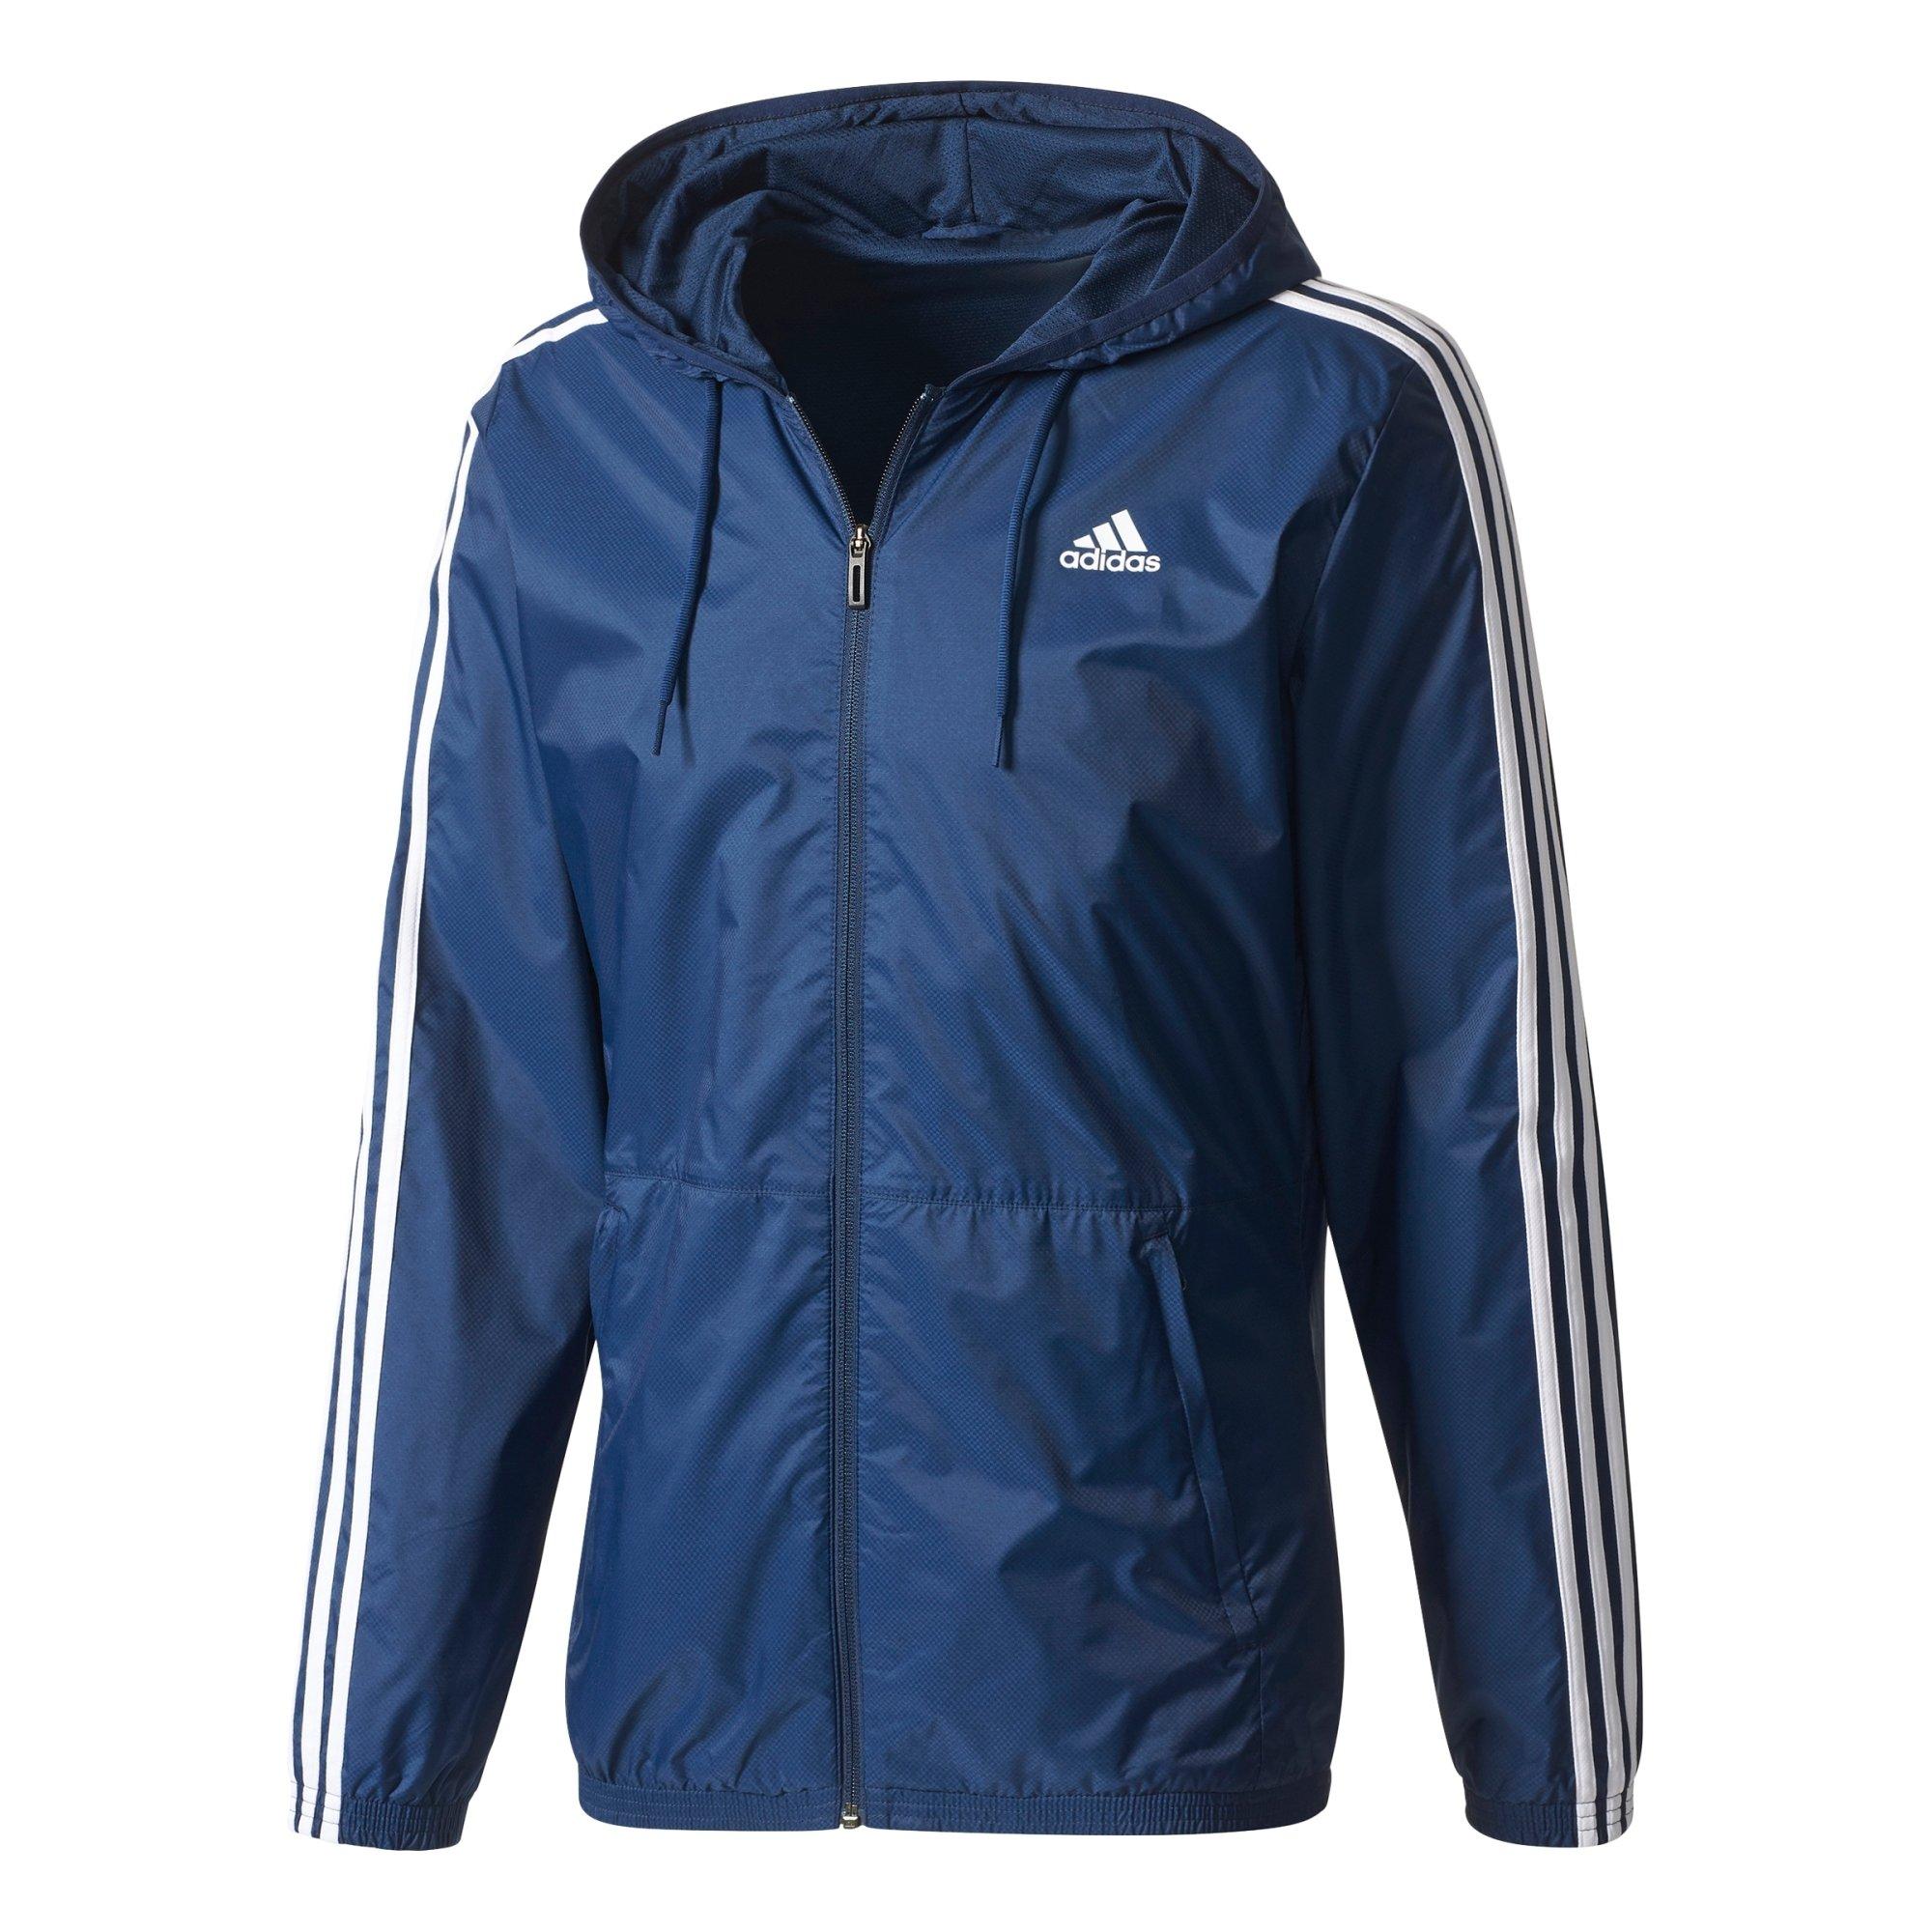 adidas athletics essential wind jacket